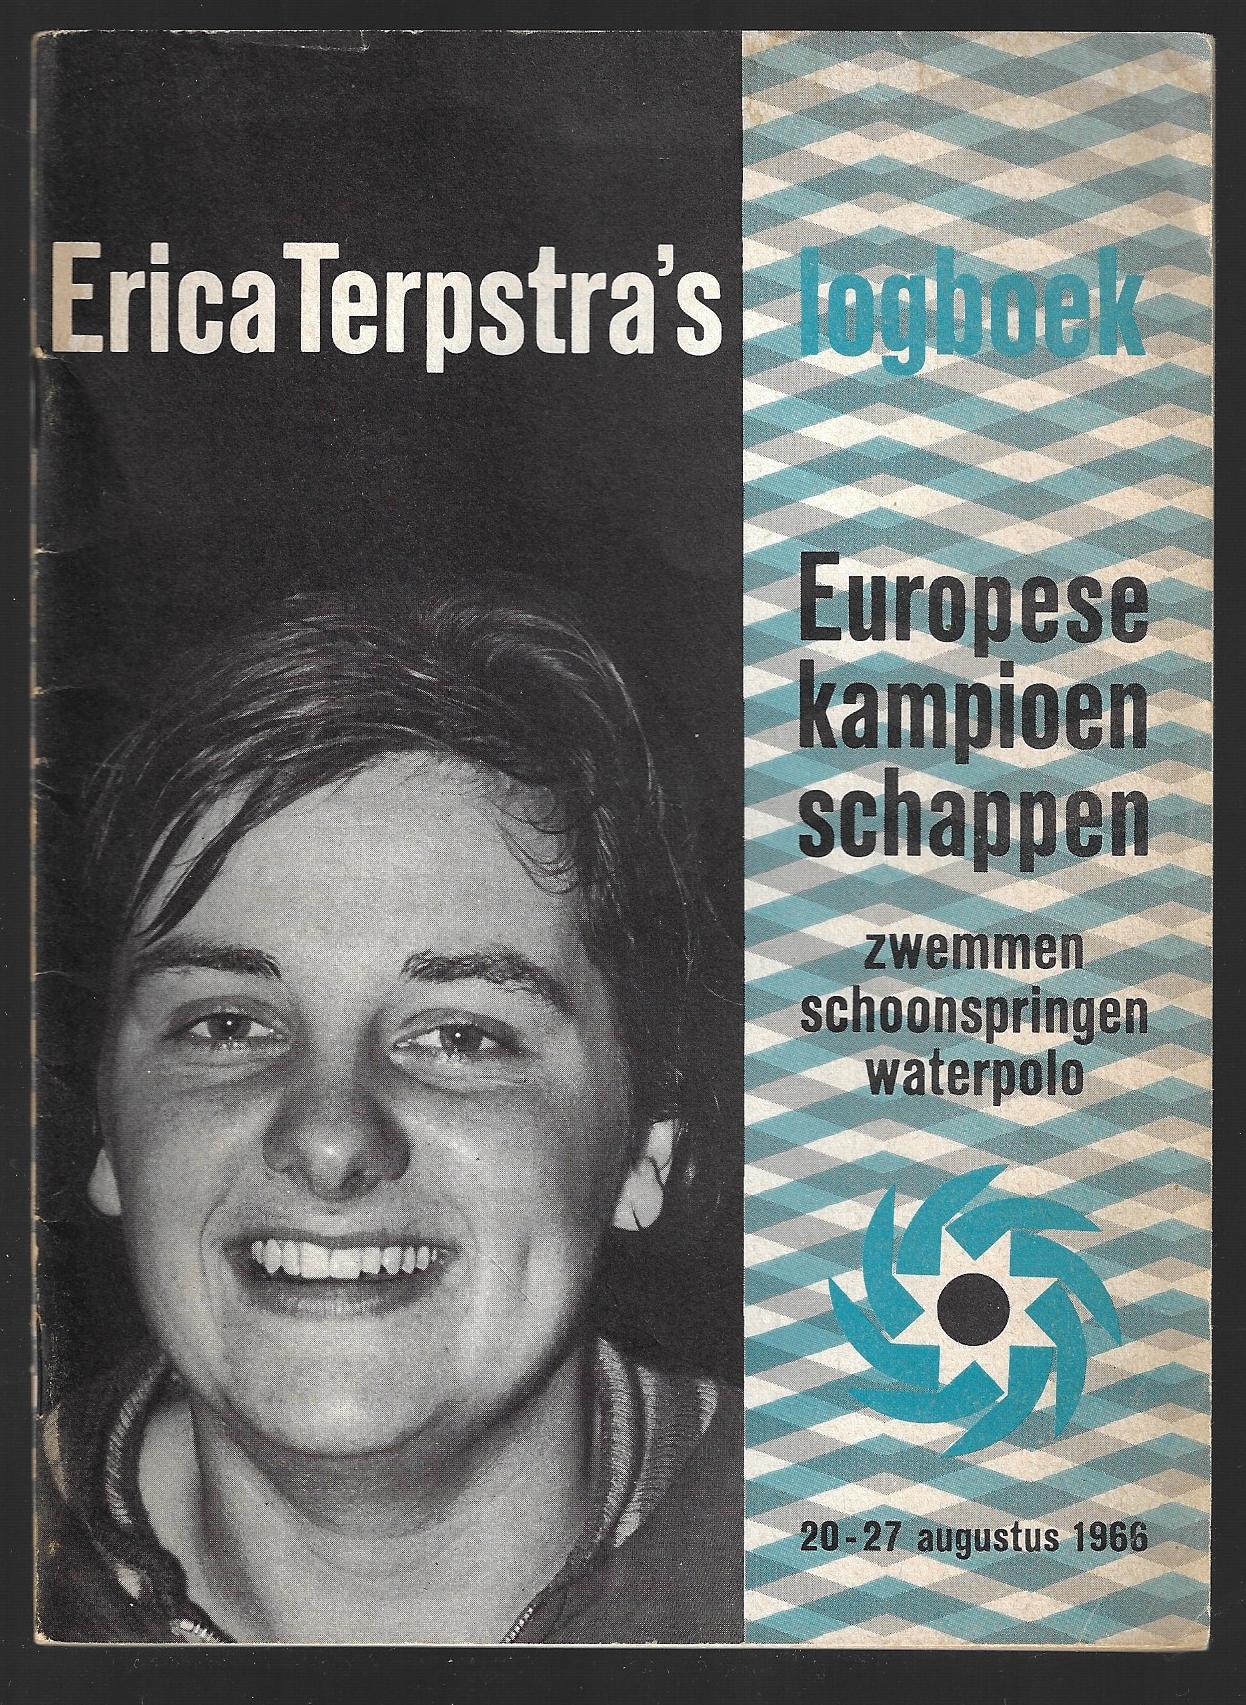  - Erika Terpstra's logboek Europese Kampioenschappen zwemmen schoonspringen waterpolo 20-27 augustus 1966